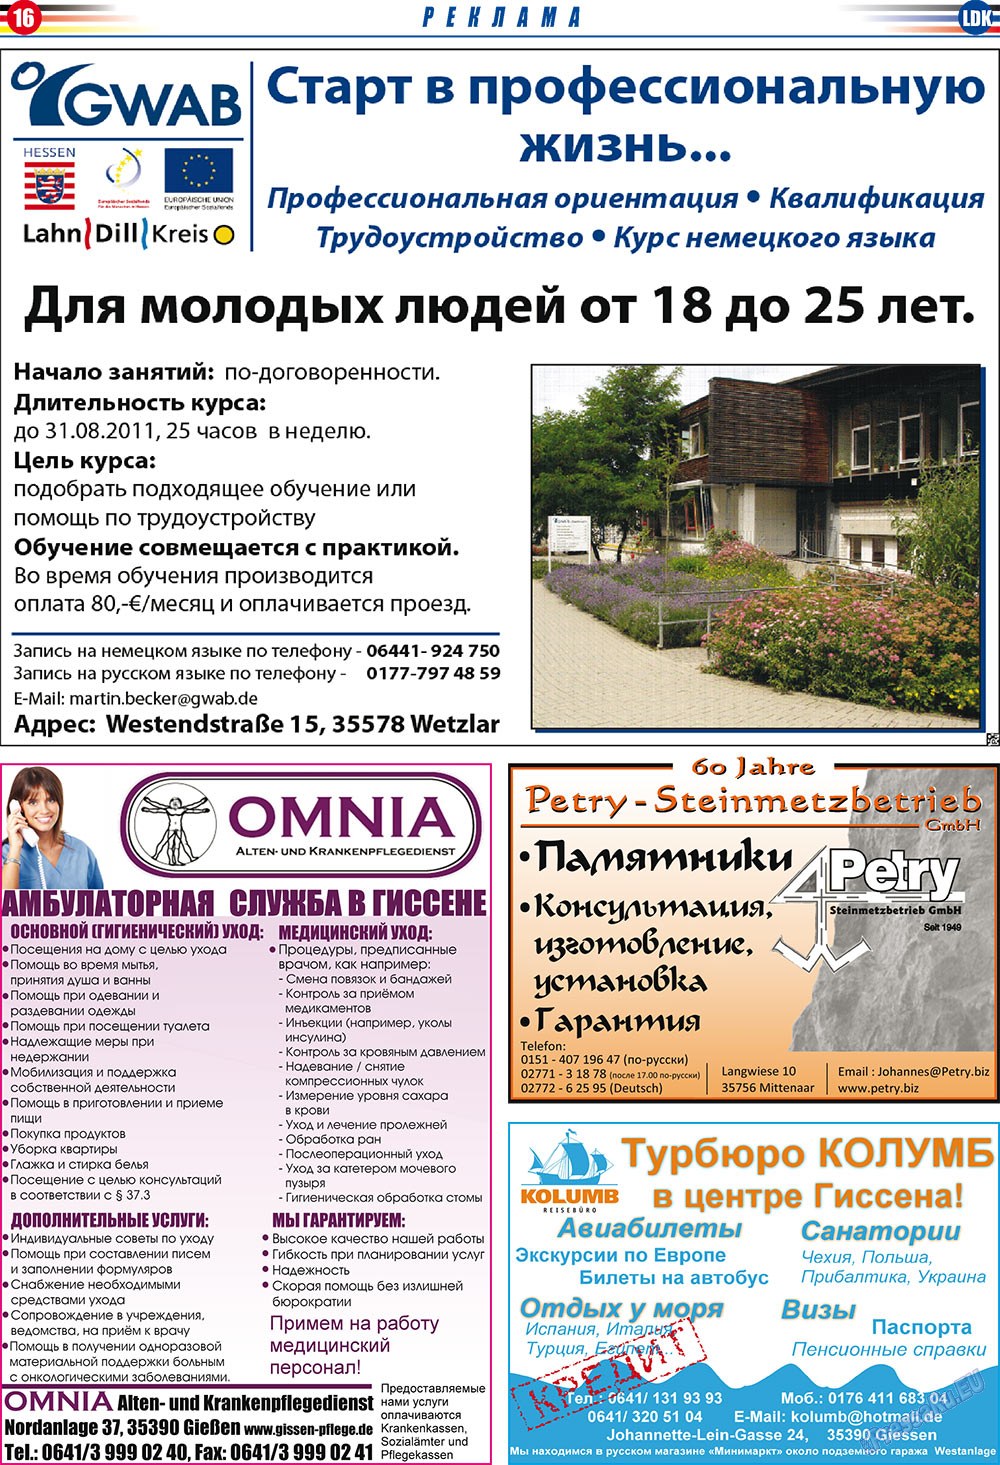 LDK по-русски (газета). 2011 год, номер 2, стр. 16